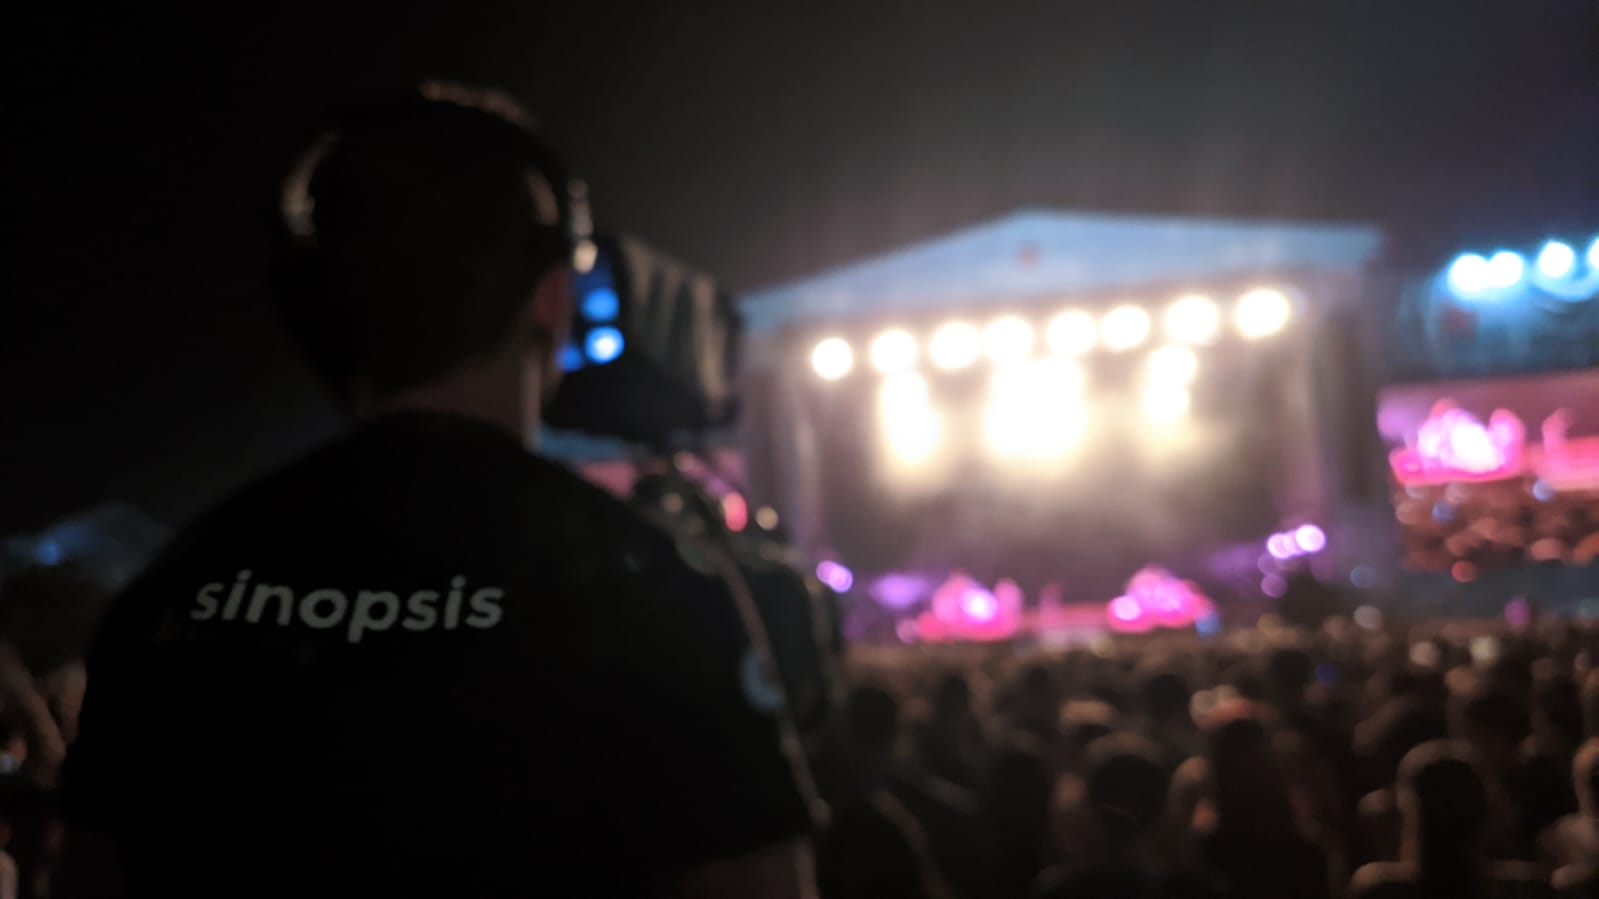 Sinopsis Media en los festivales de música del verano